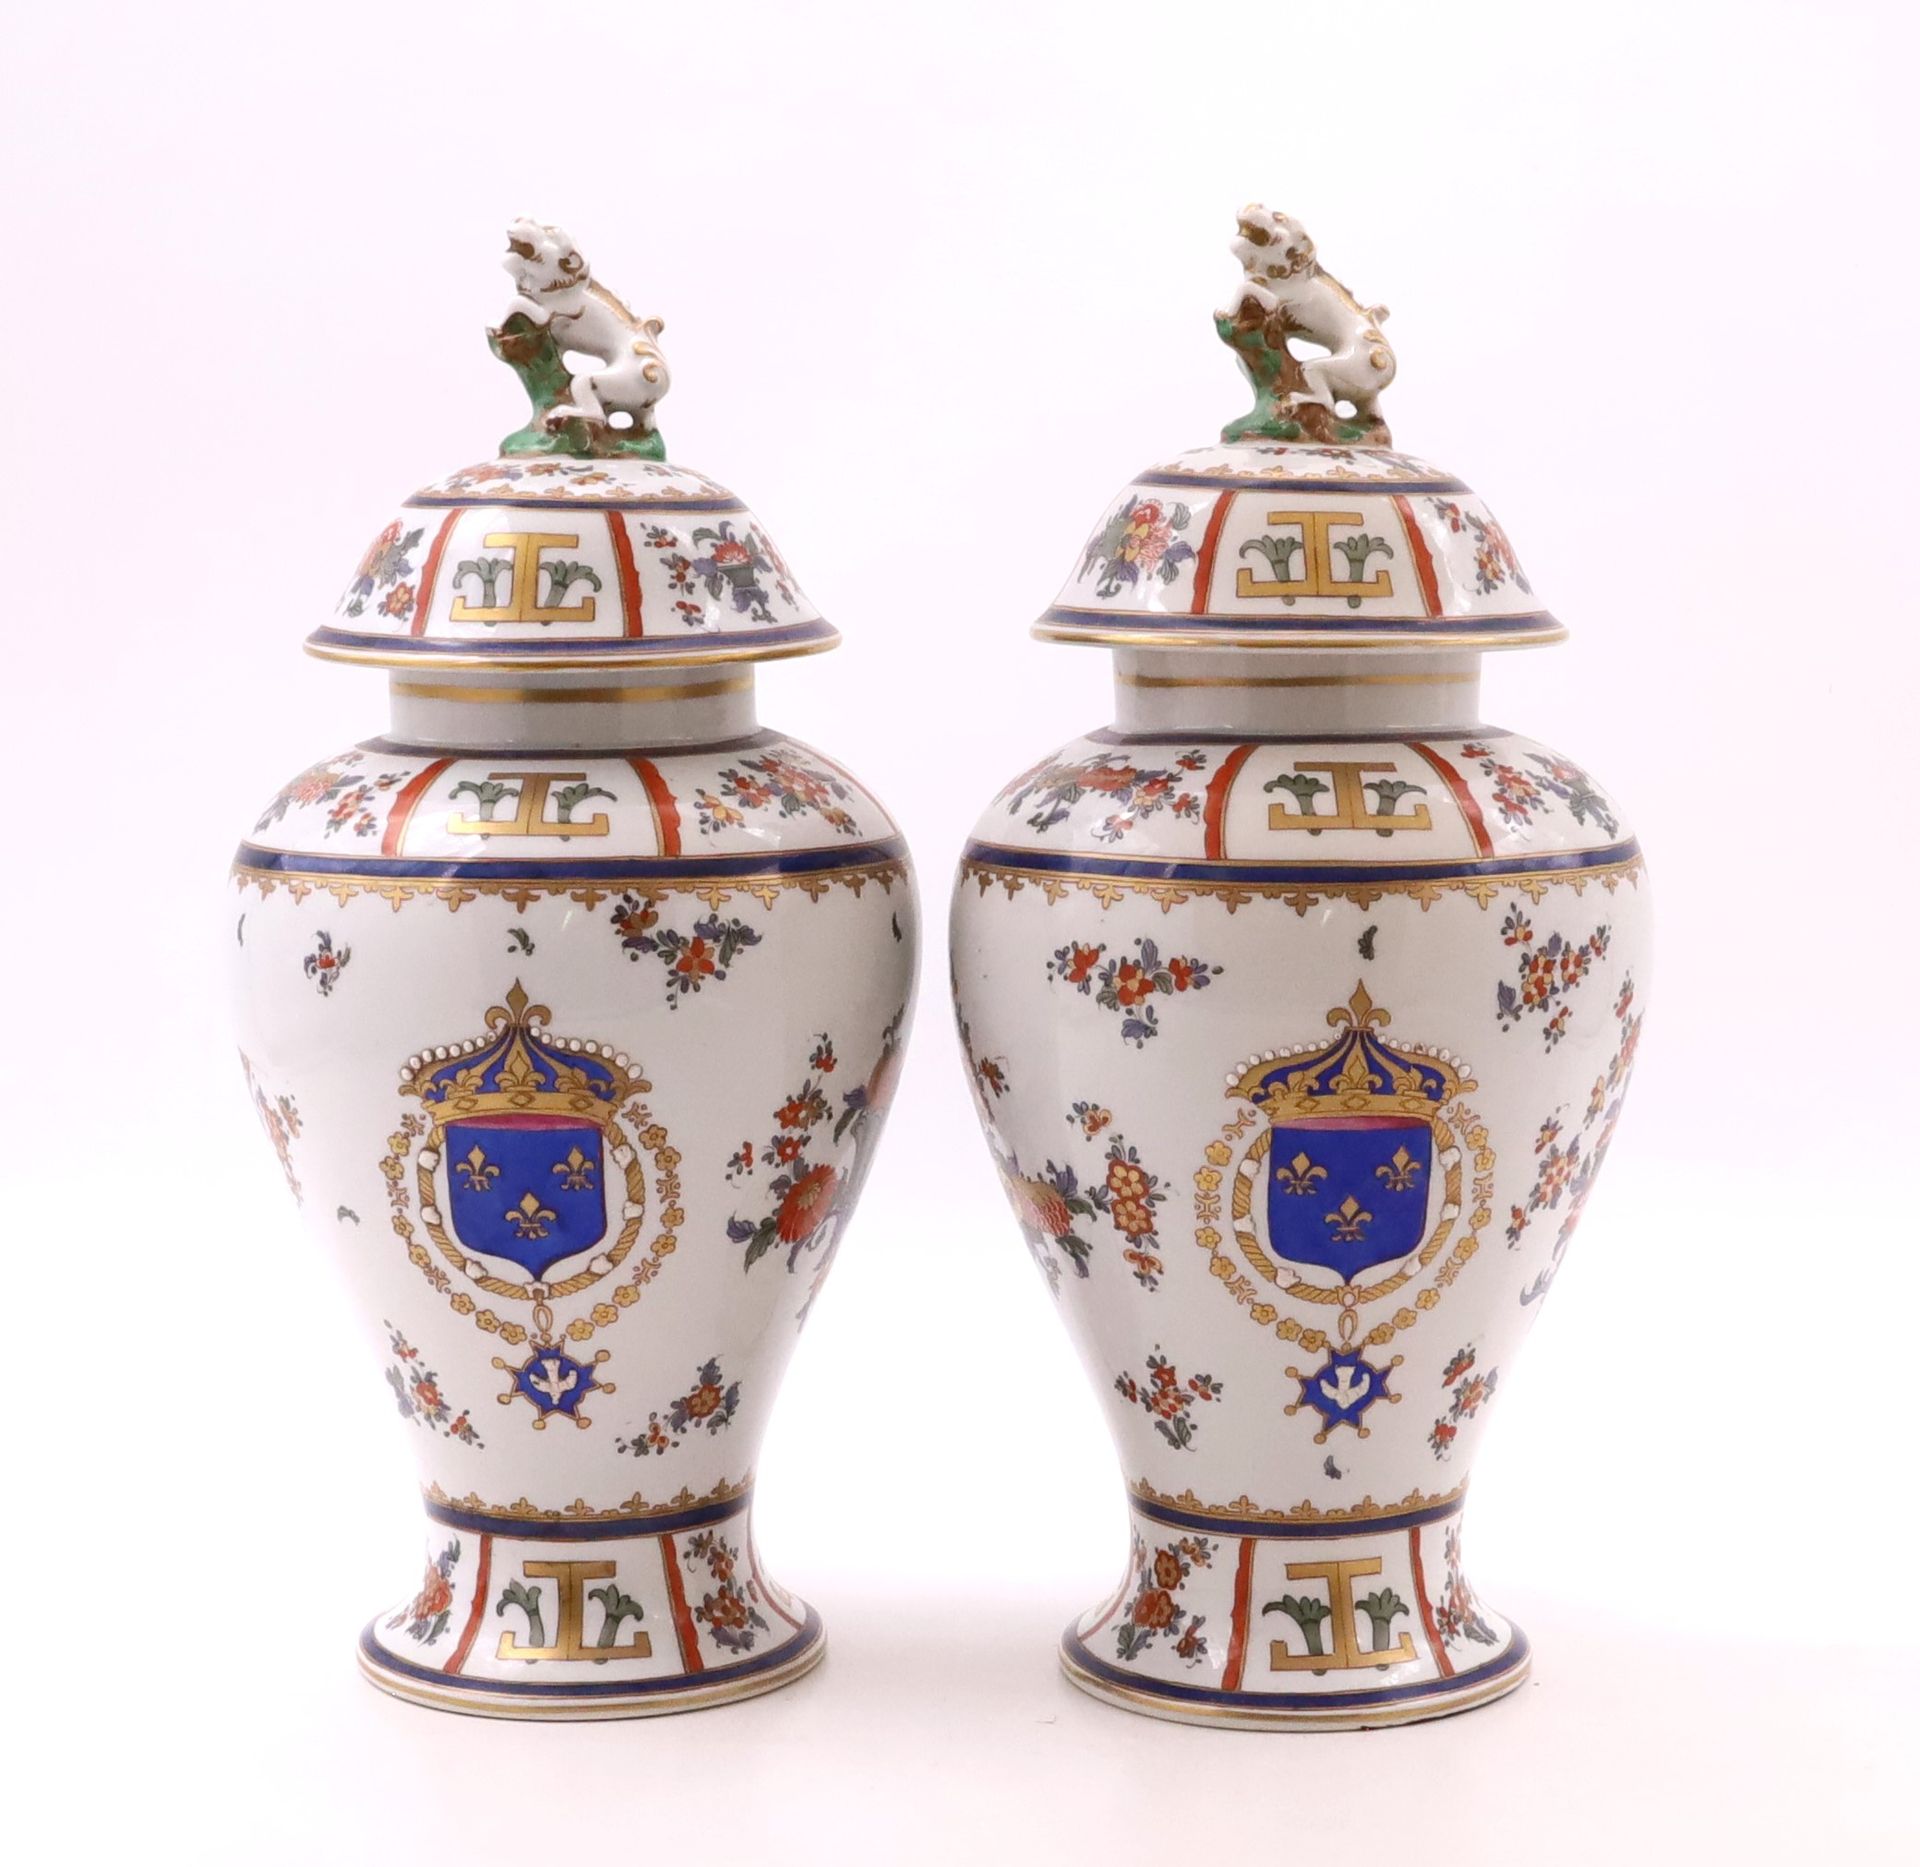 Null 萨姆森 - 一对瓷制的有盖花瓶，花瓶呈柱状，装饰着法国的盾牌和花朵，颈部和底座上有刻痕，盖子上有一只狗 - 有萨姆森制造的标记 - 高40厘米